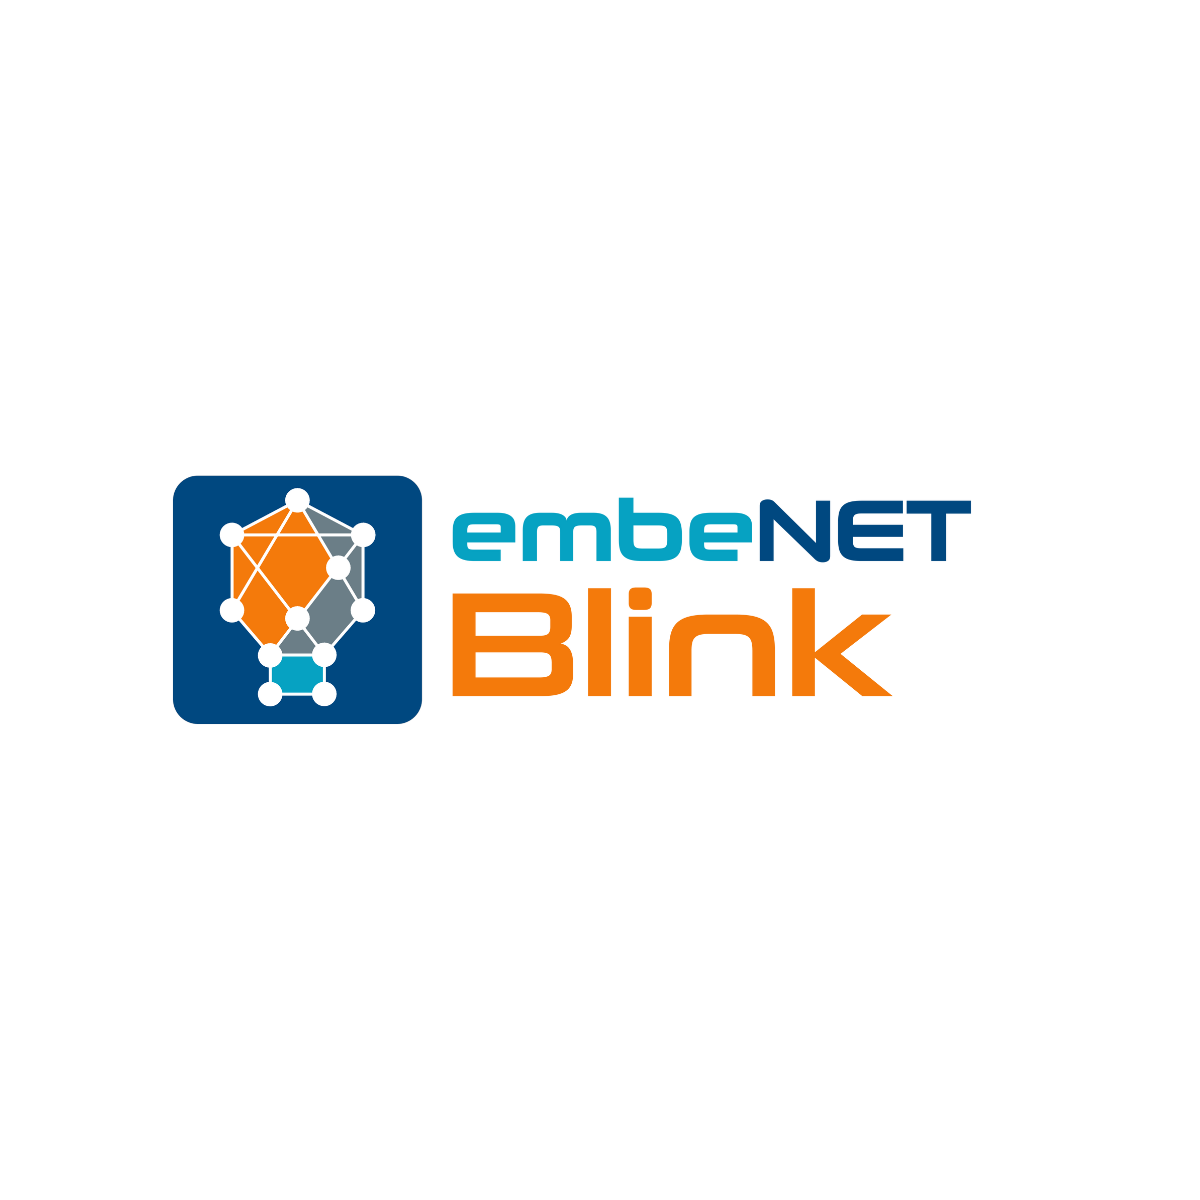 Latest breakthrough in lighting control technology – embeNET BLINK